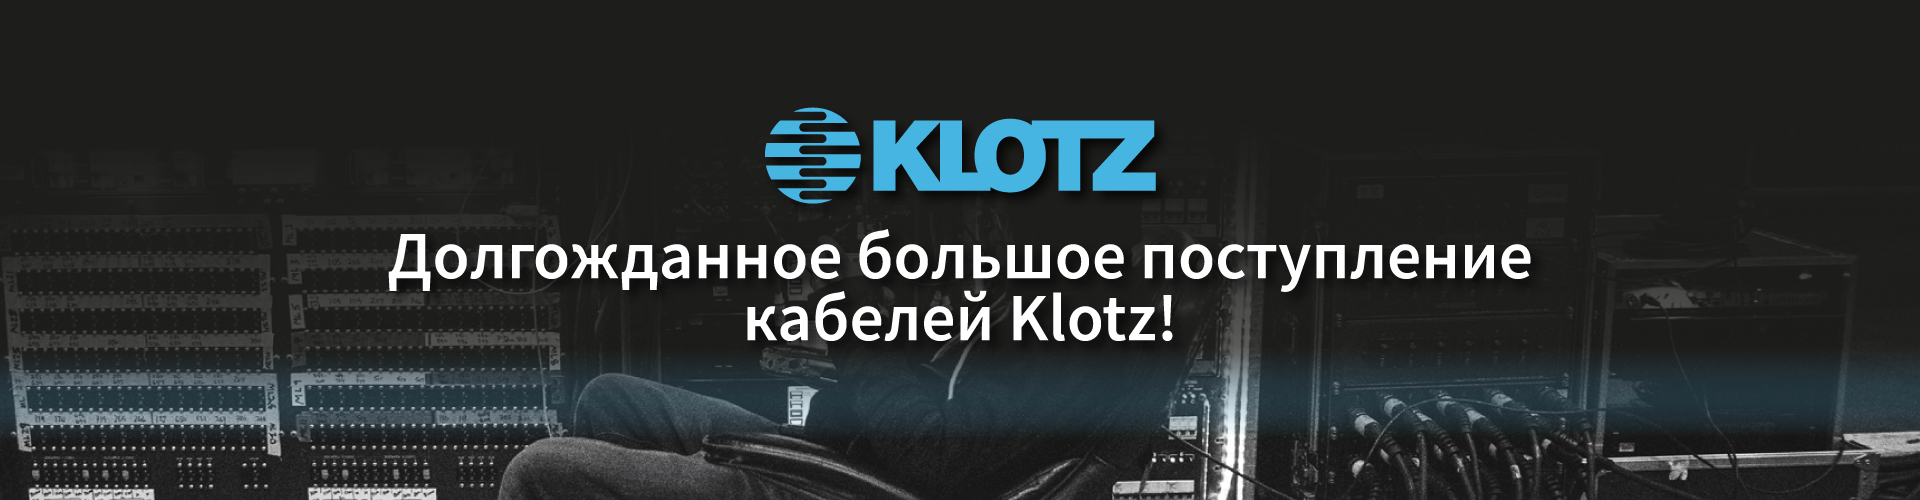 Долгожданное поступление кабелей Klotz